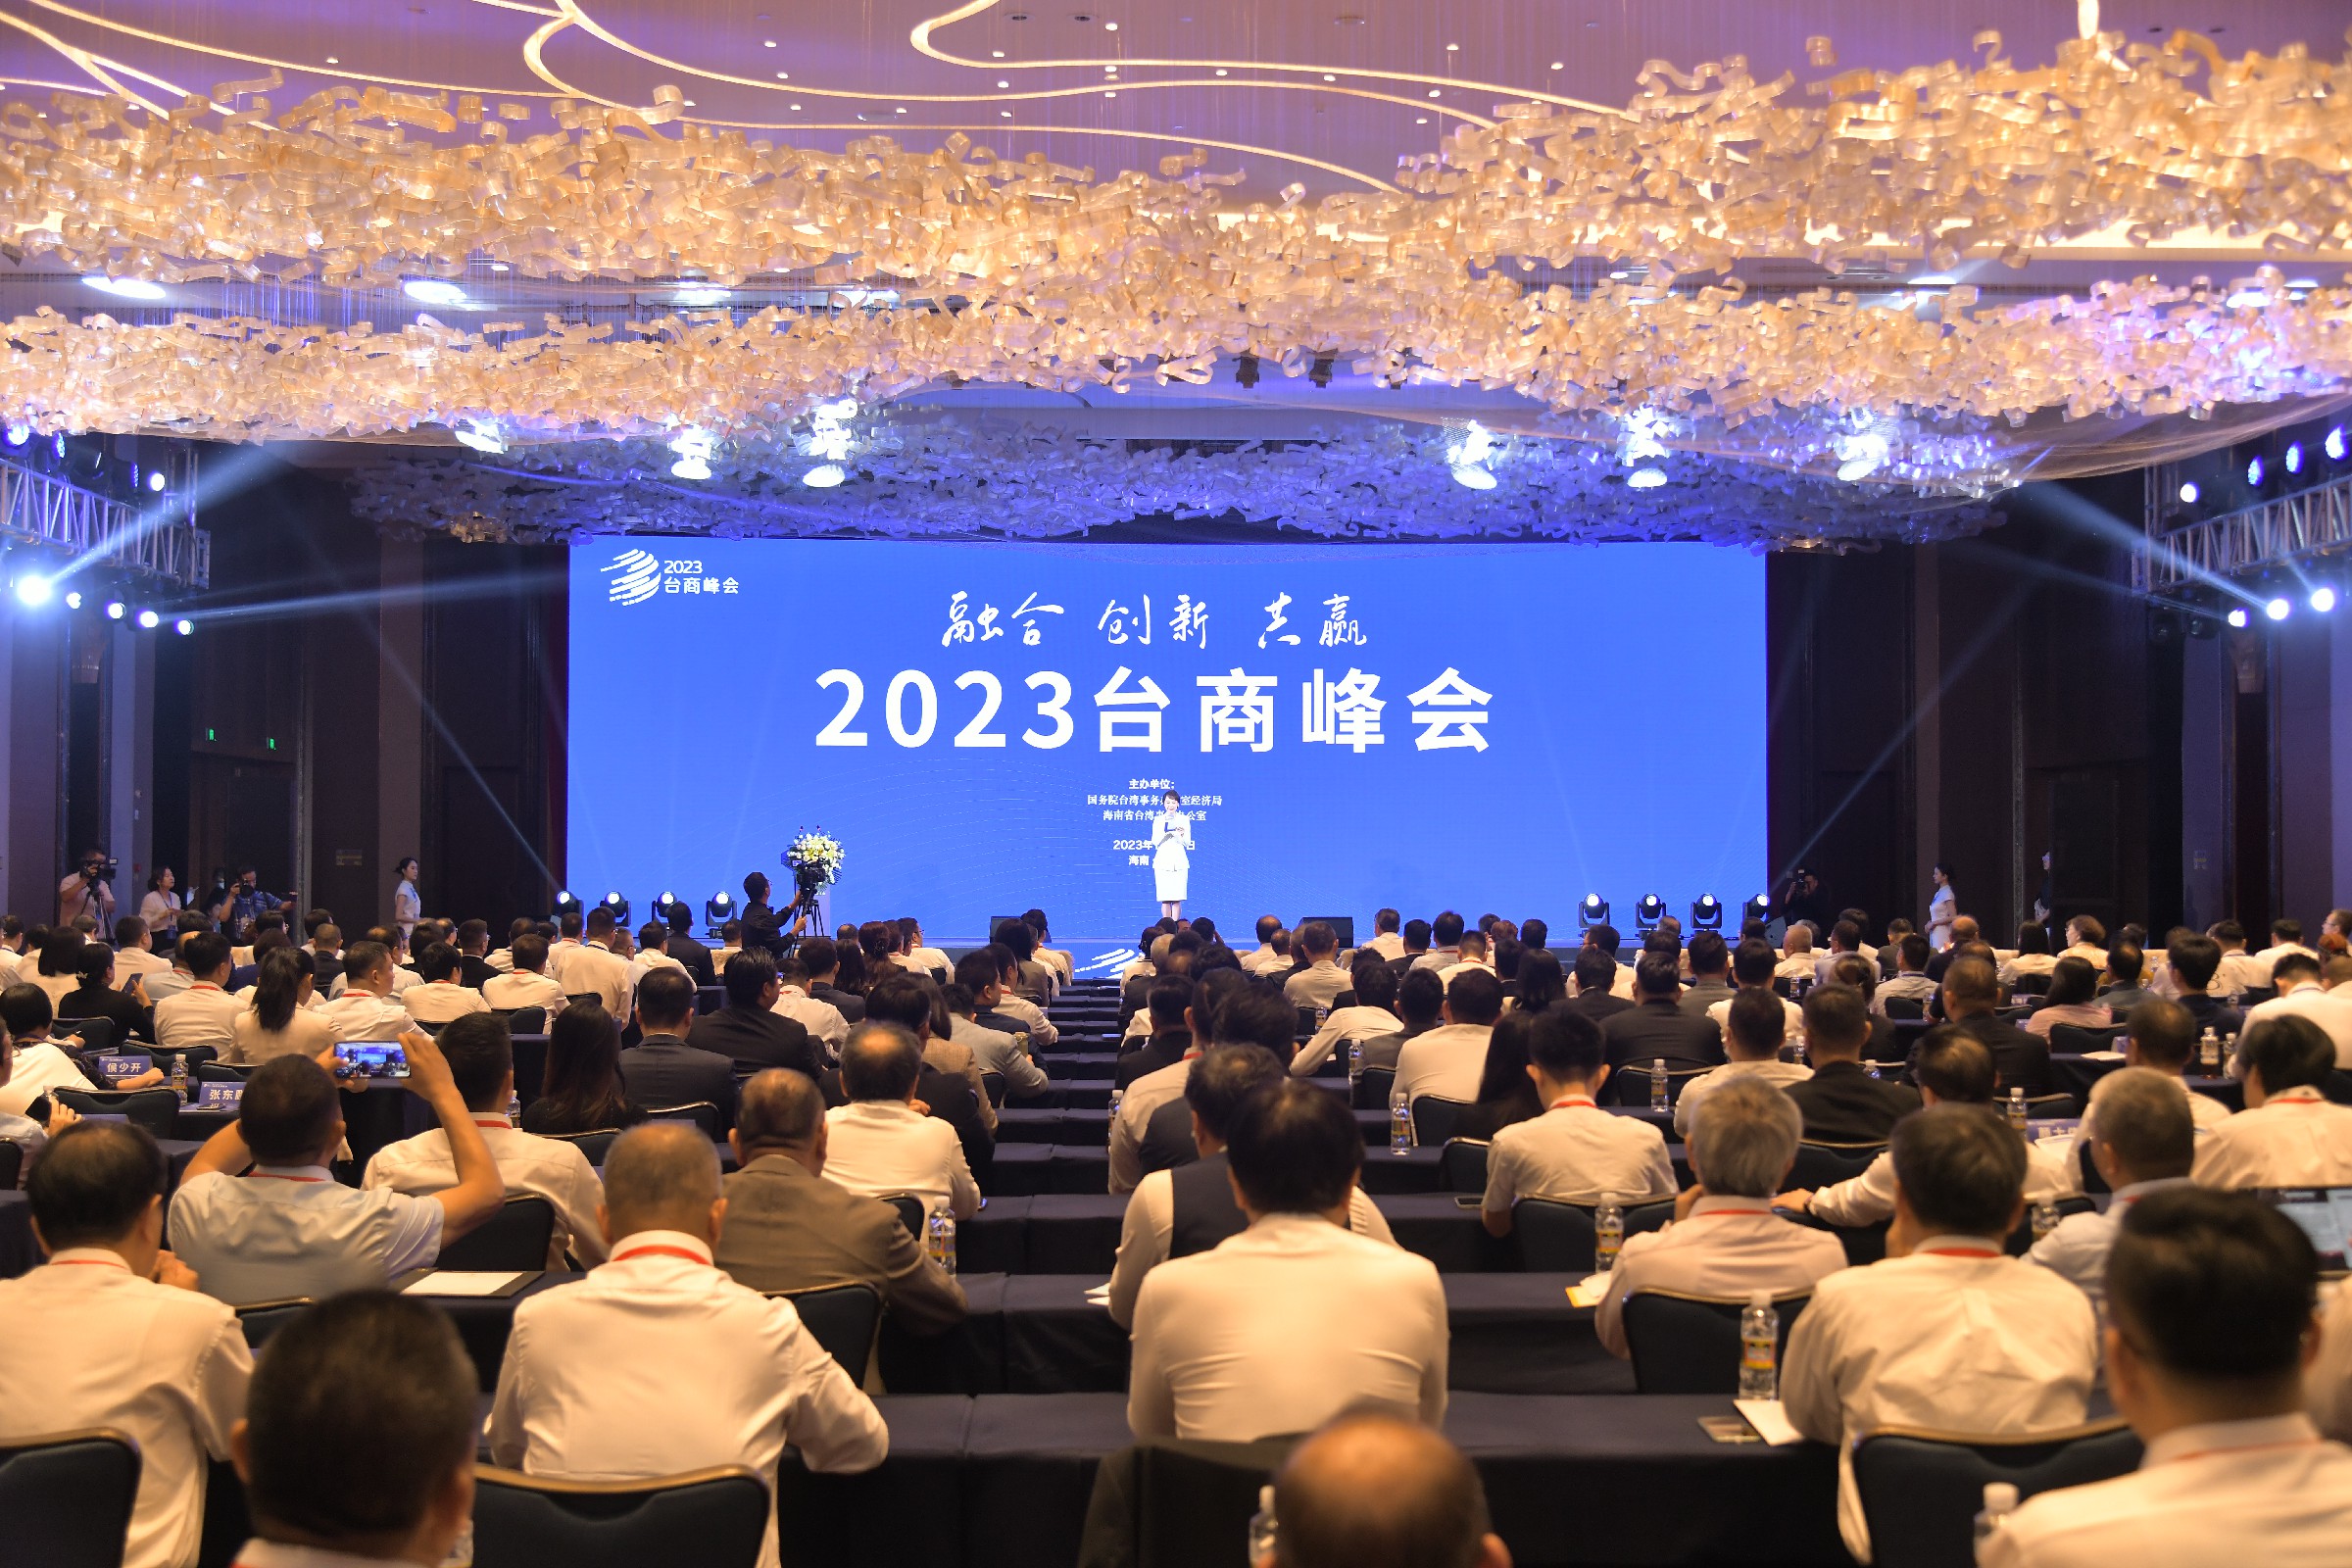 2023臺商峰會海口開幕 多項利好政策促瓊臺合作共贏